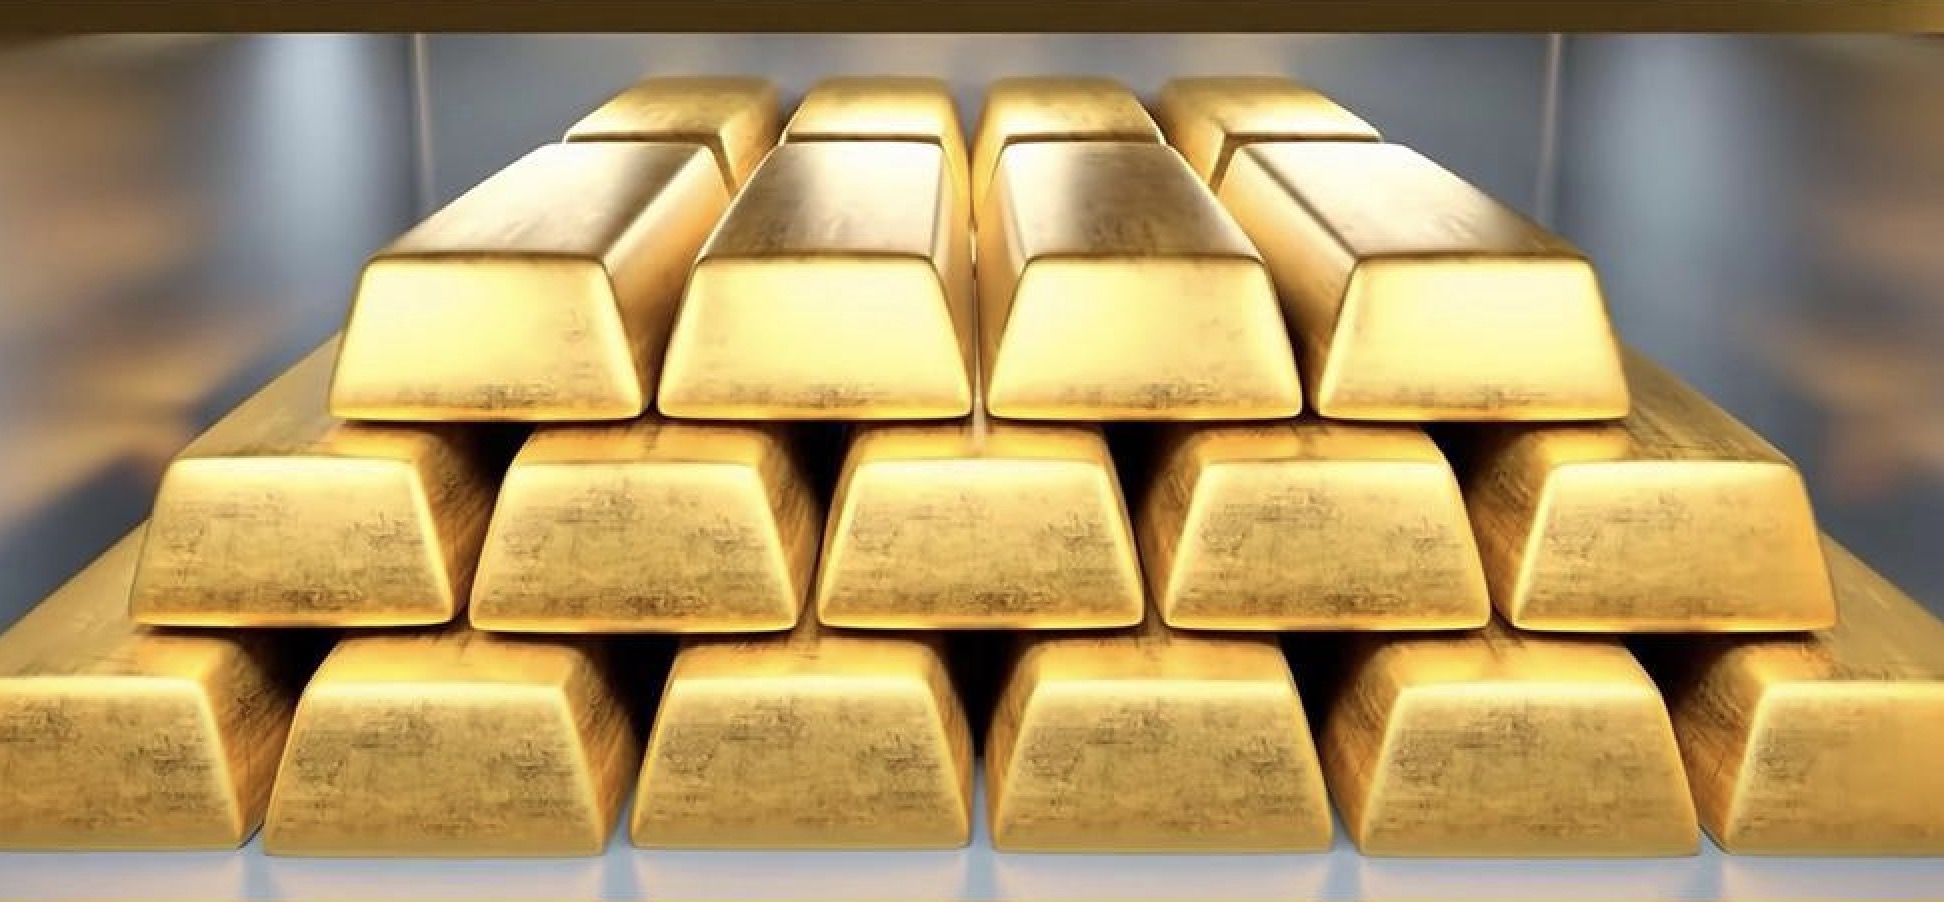 คำเตือนการซื้อขายทองคำ: ข้อมูลการจ้างงานสหรัฐฯ กำลังดีขึ้น ราคาทองคำยังคงสูงกว่าค่าเฉลี่ยเคลื่อนที่ 21 วัน รอการต่อสู้ชี้ขาด "นอกภาคเกษตร"